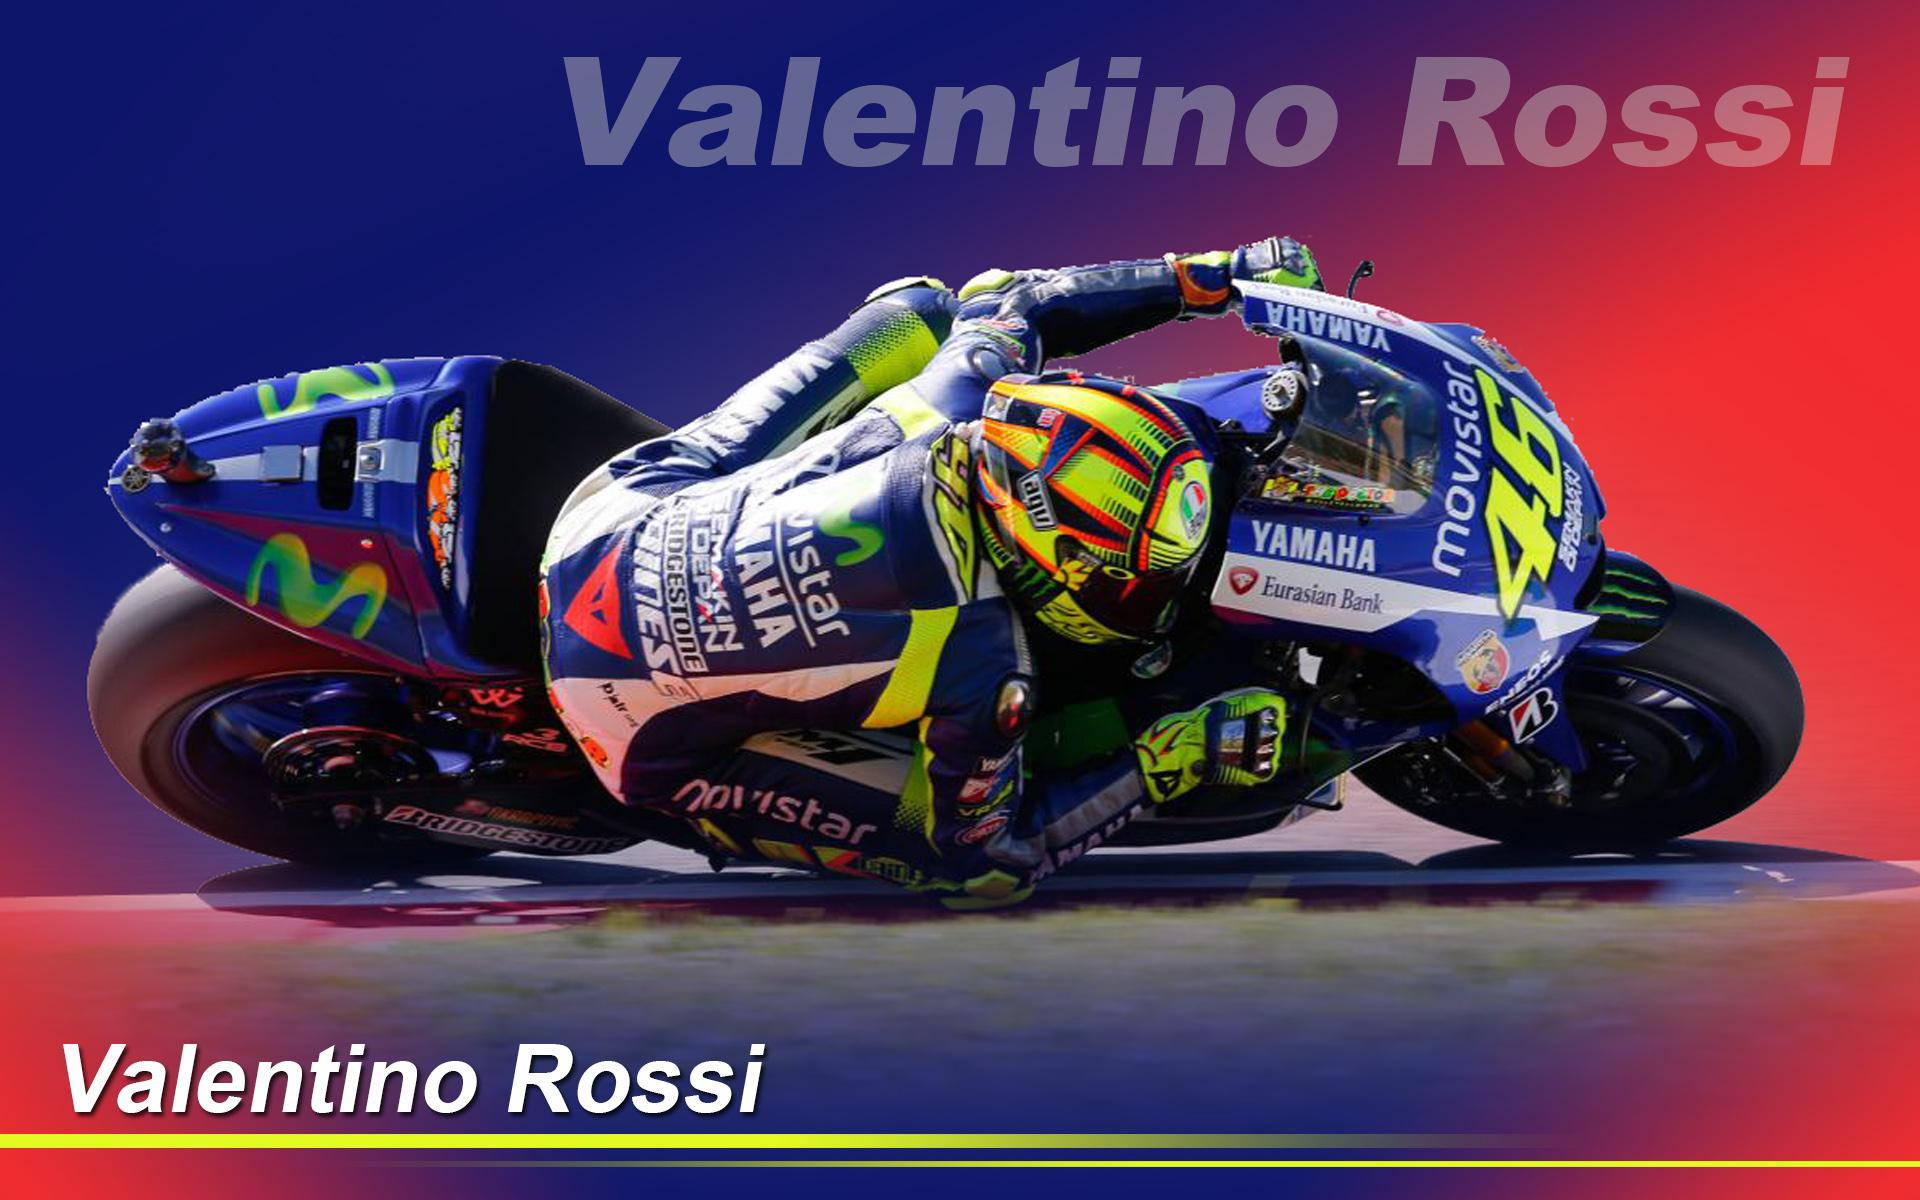 Valentino Rossi - The Italian Motogp Maestro